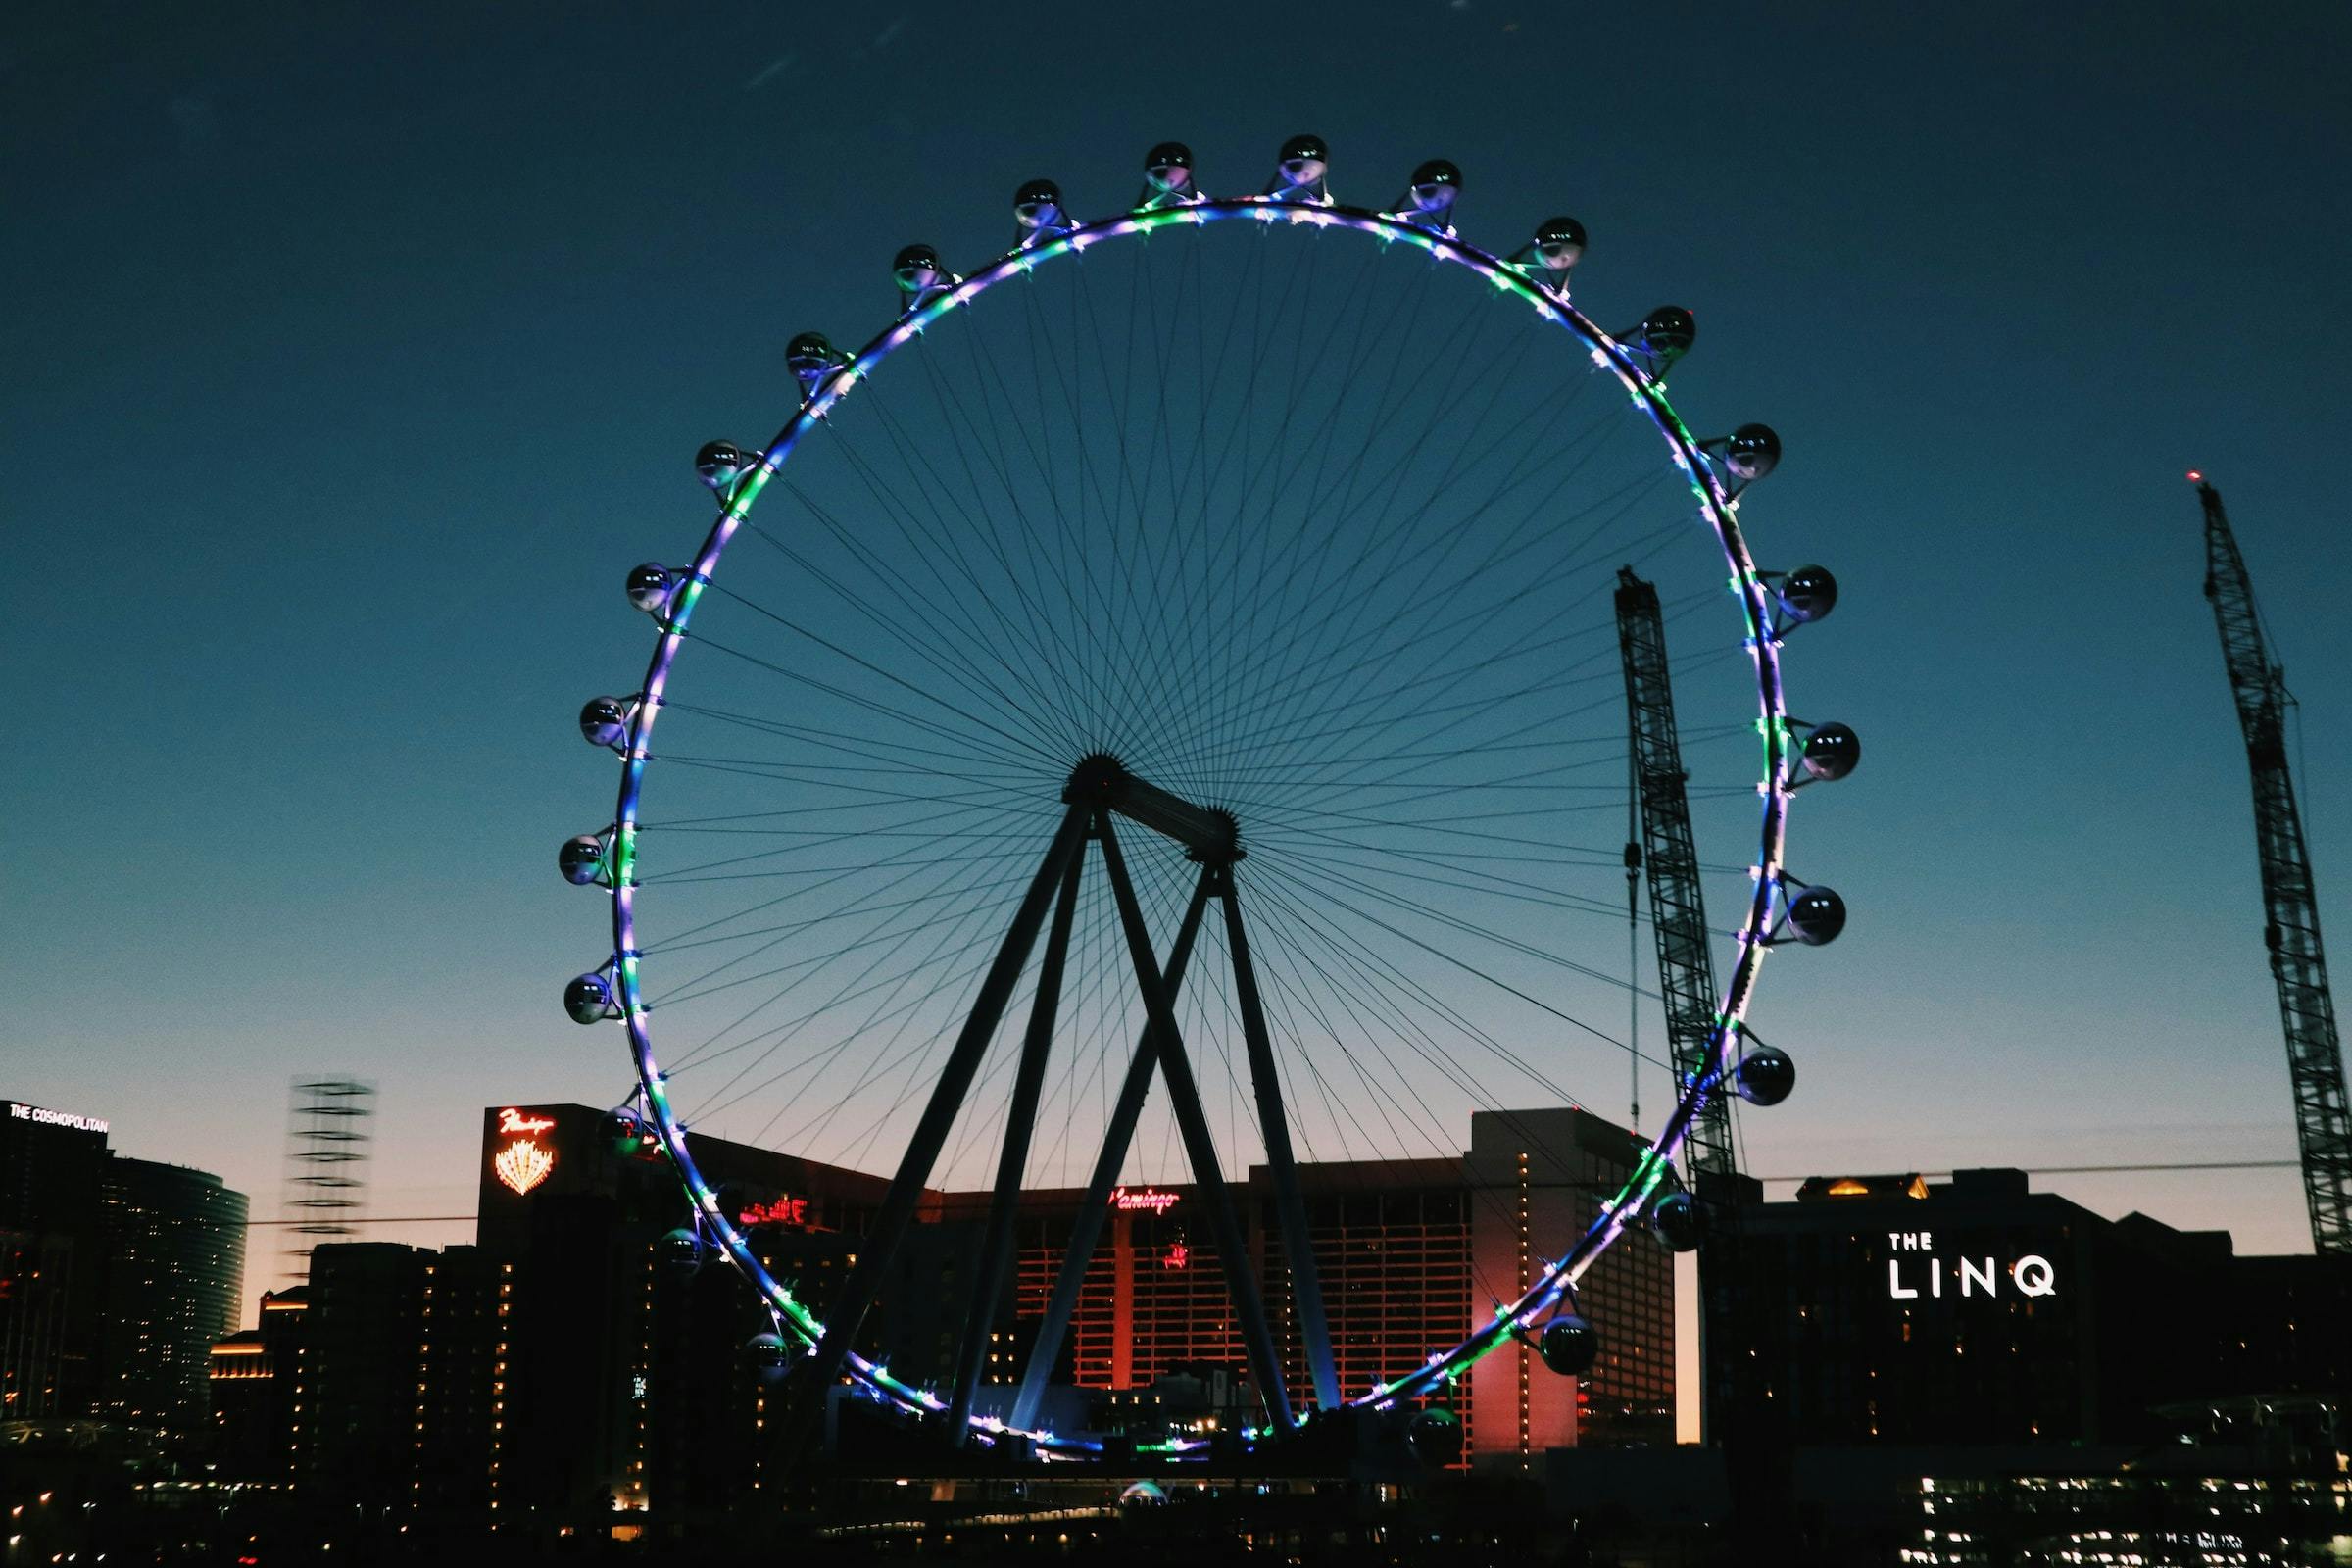 Las Vegas Seasons: When is the Best Time to Visit Las Vegas?